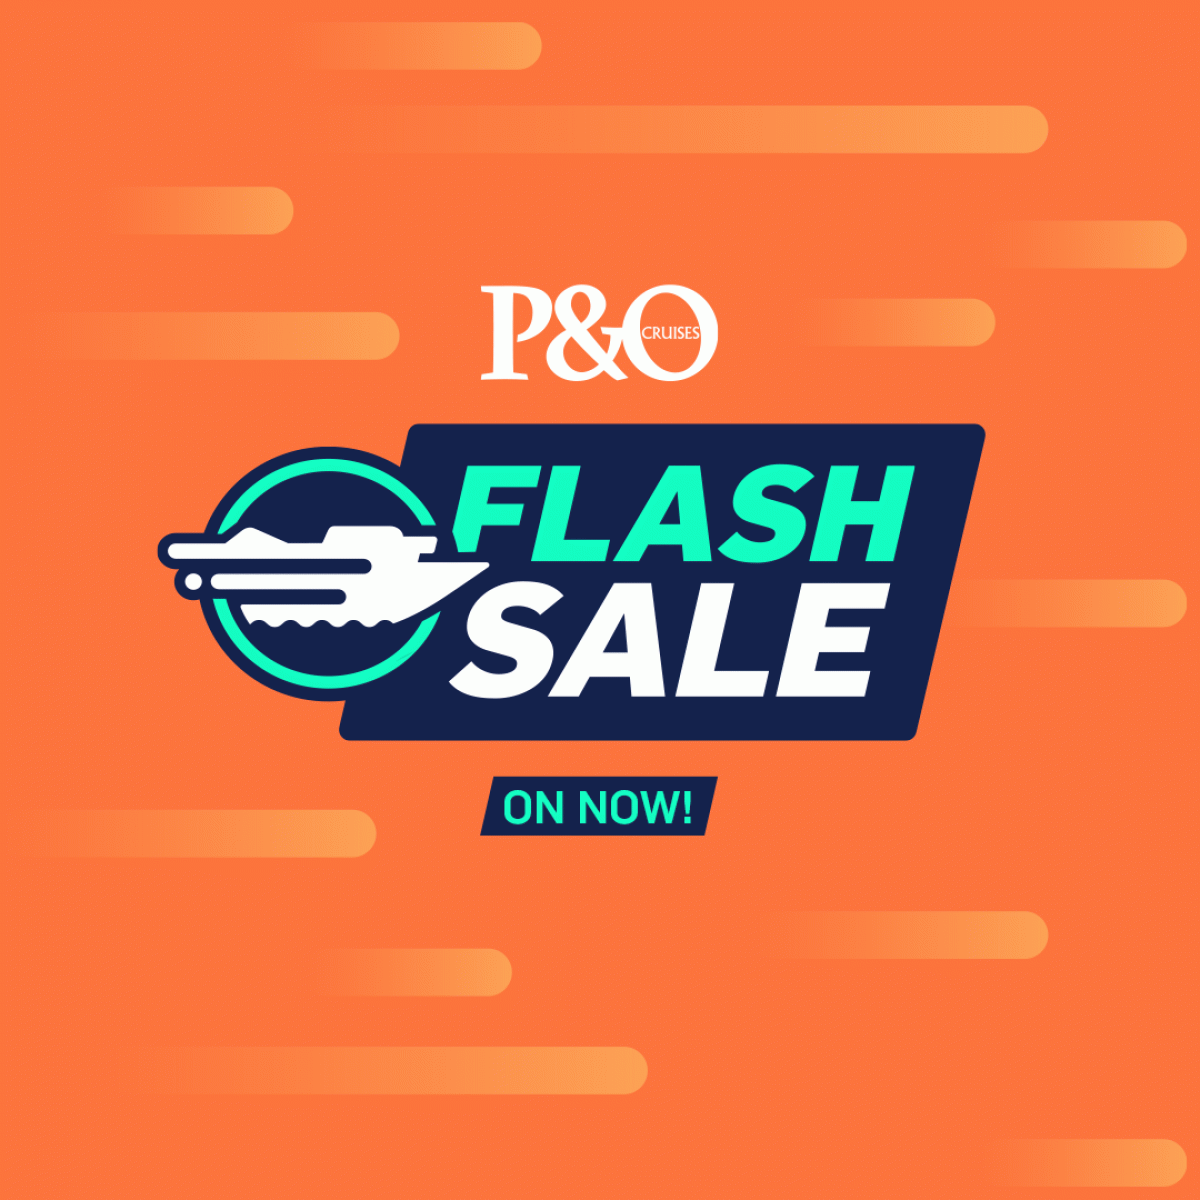 P&O Cruises Flash Sale